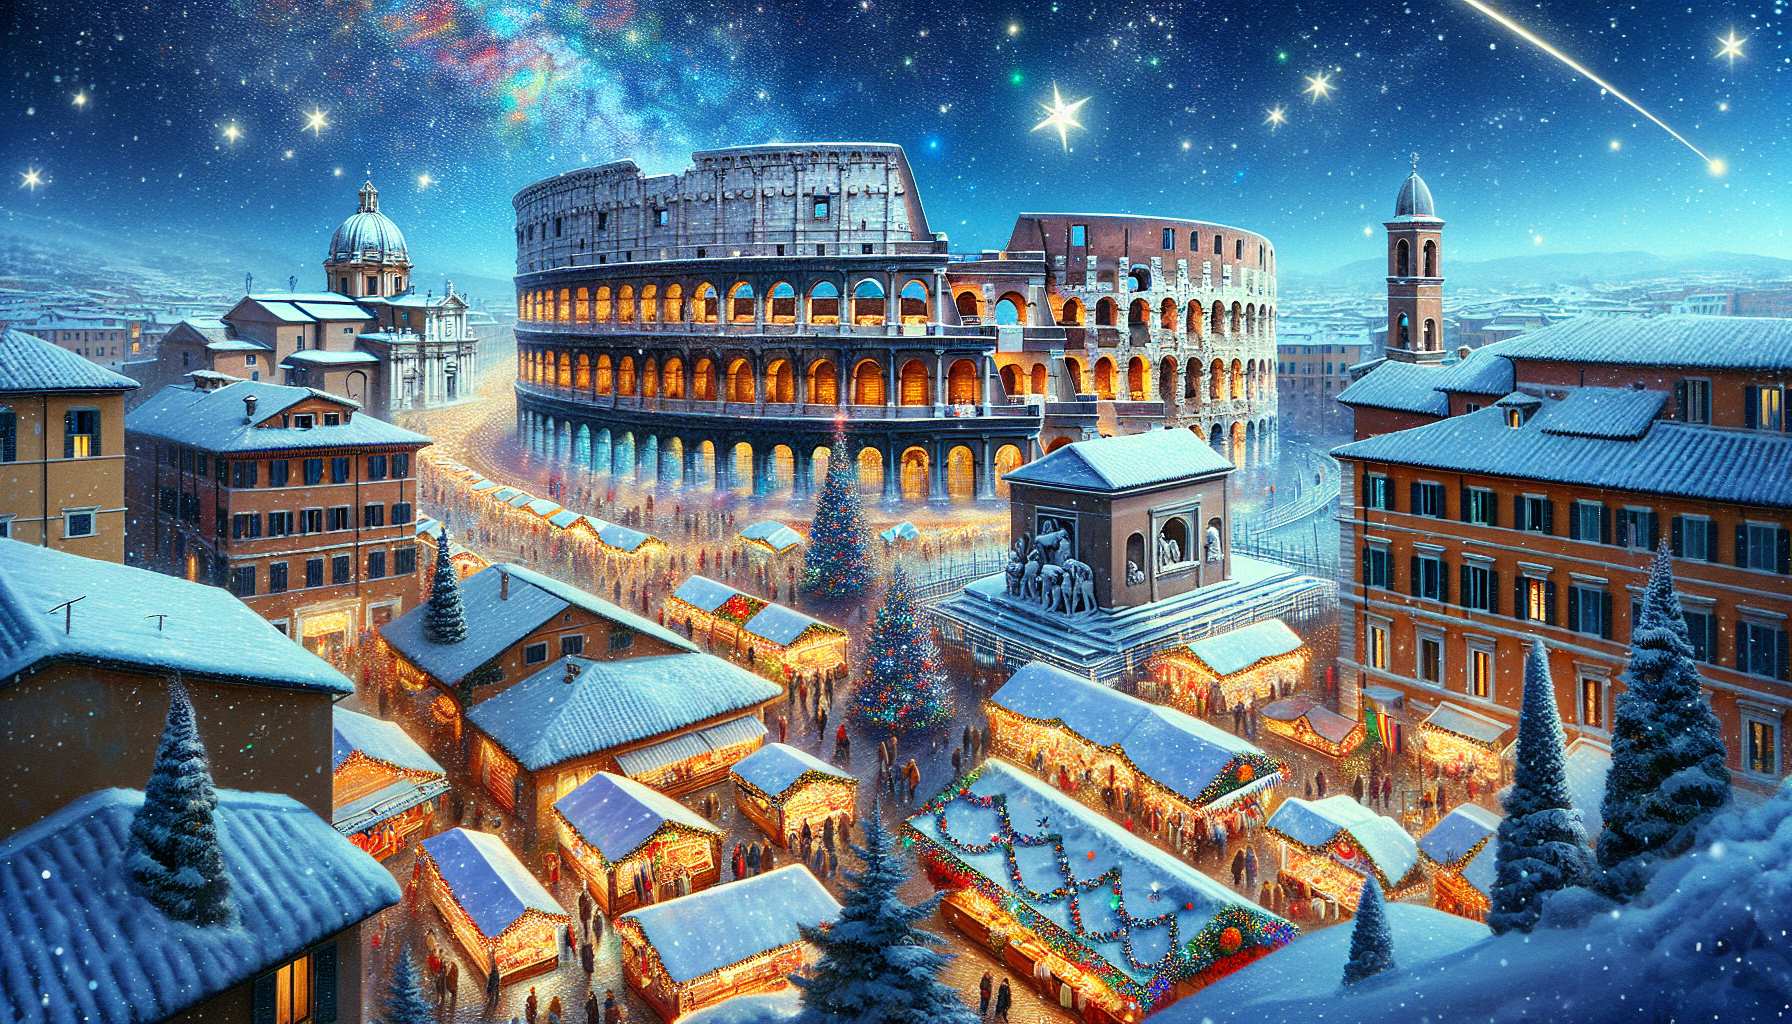 Roma en diciembre, Colosseum nevado y mercado navideño